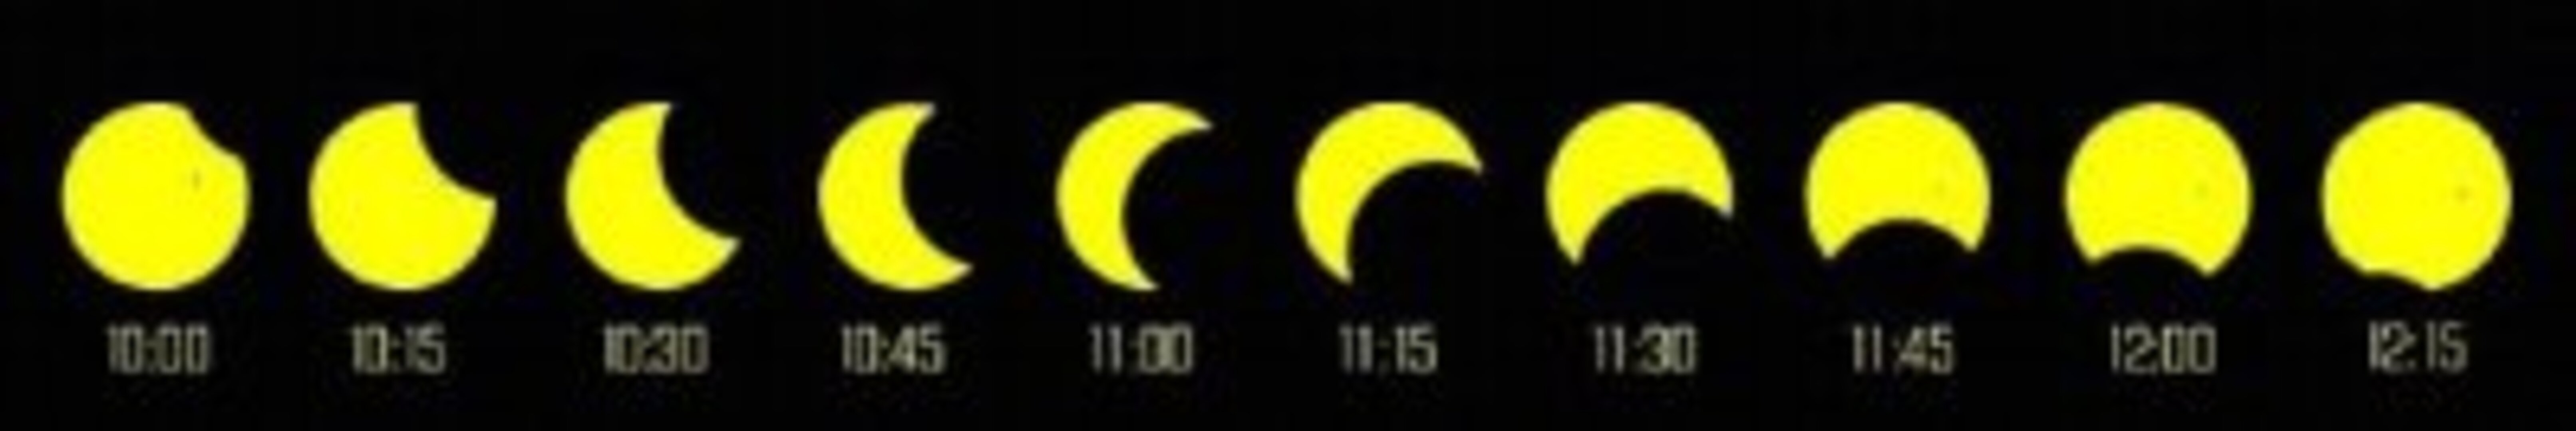 solar eclipse belgium 2005